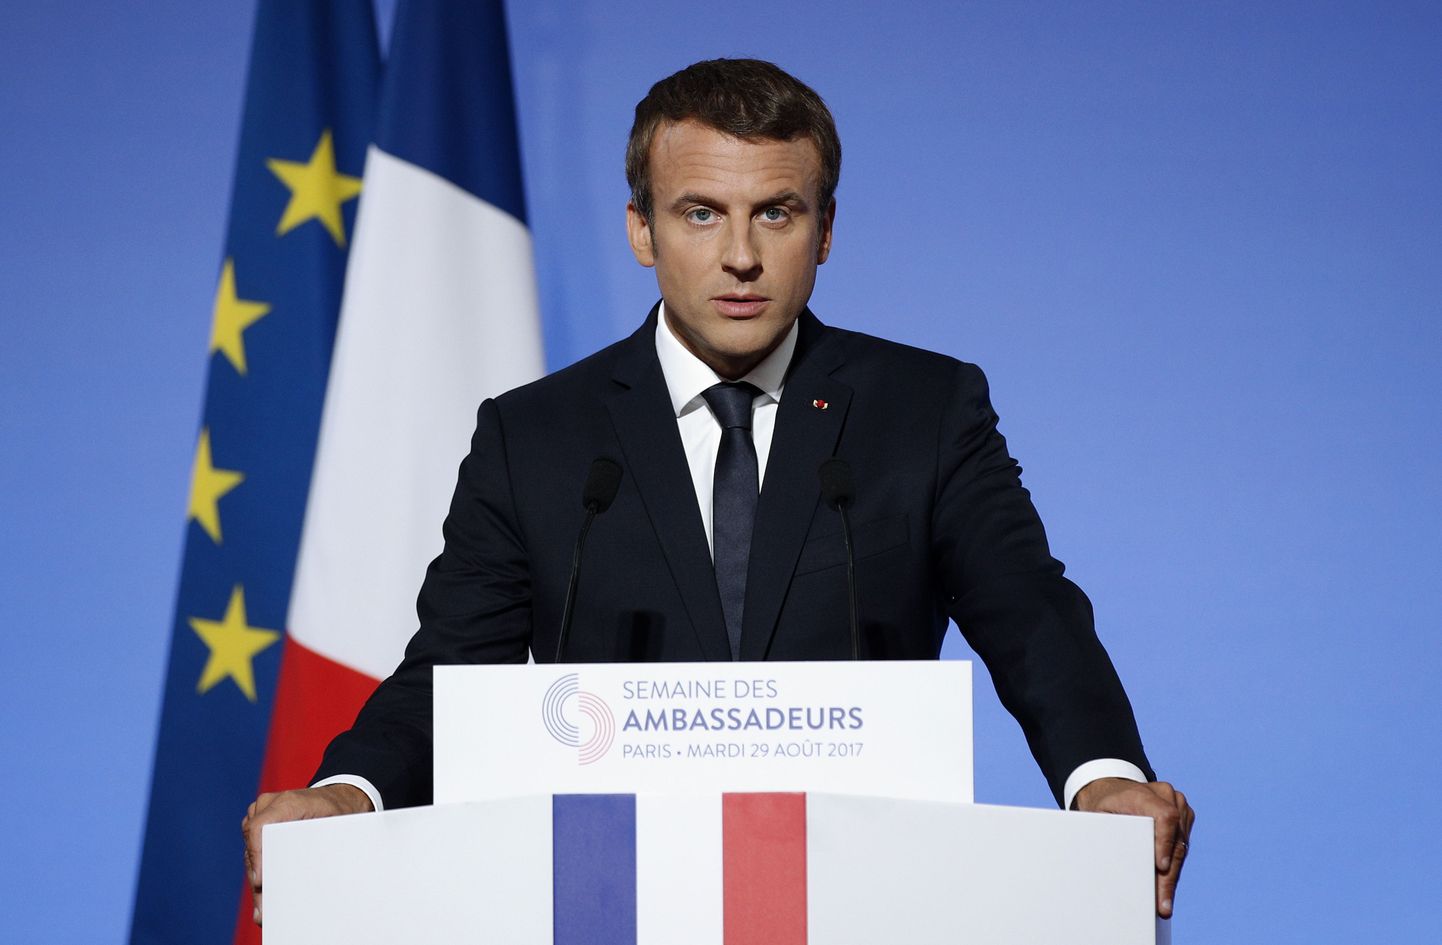 Emmanuel Macron eile Elysée palees kõnet pidamas.